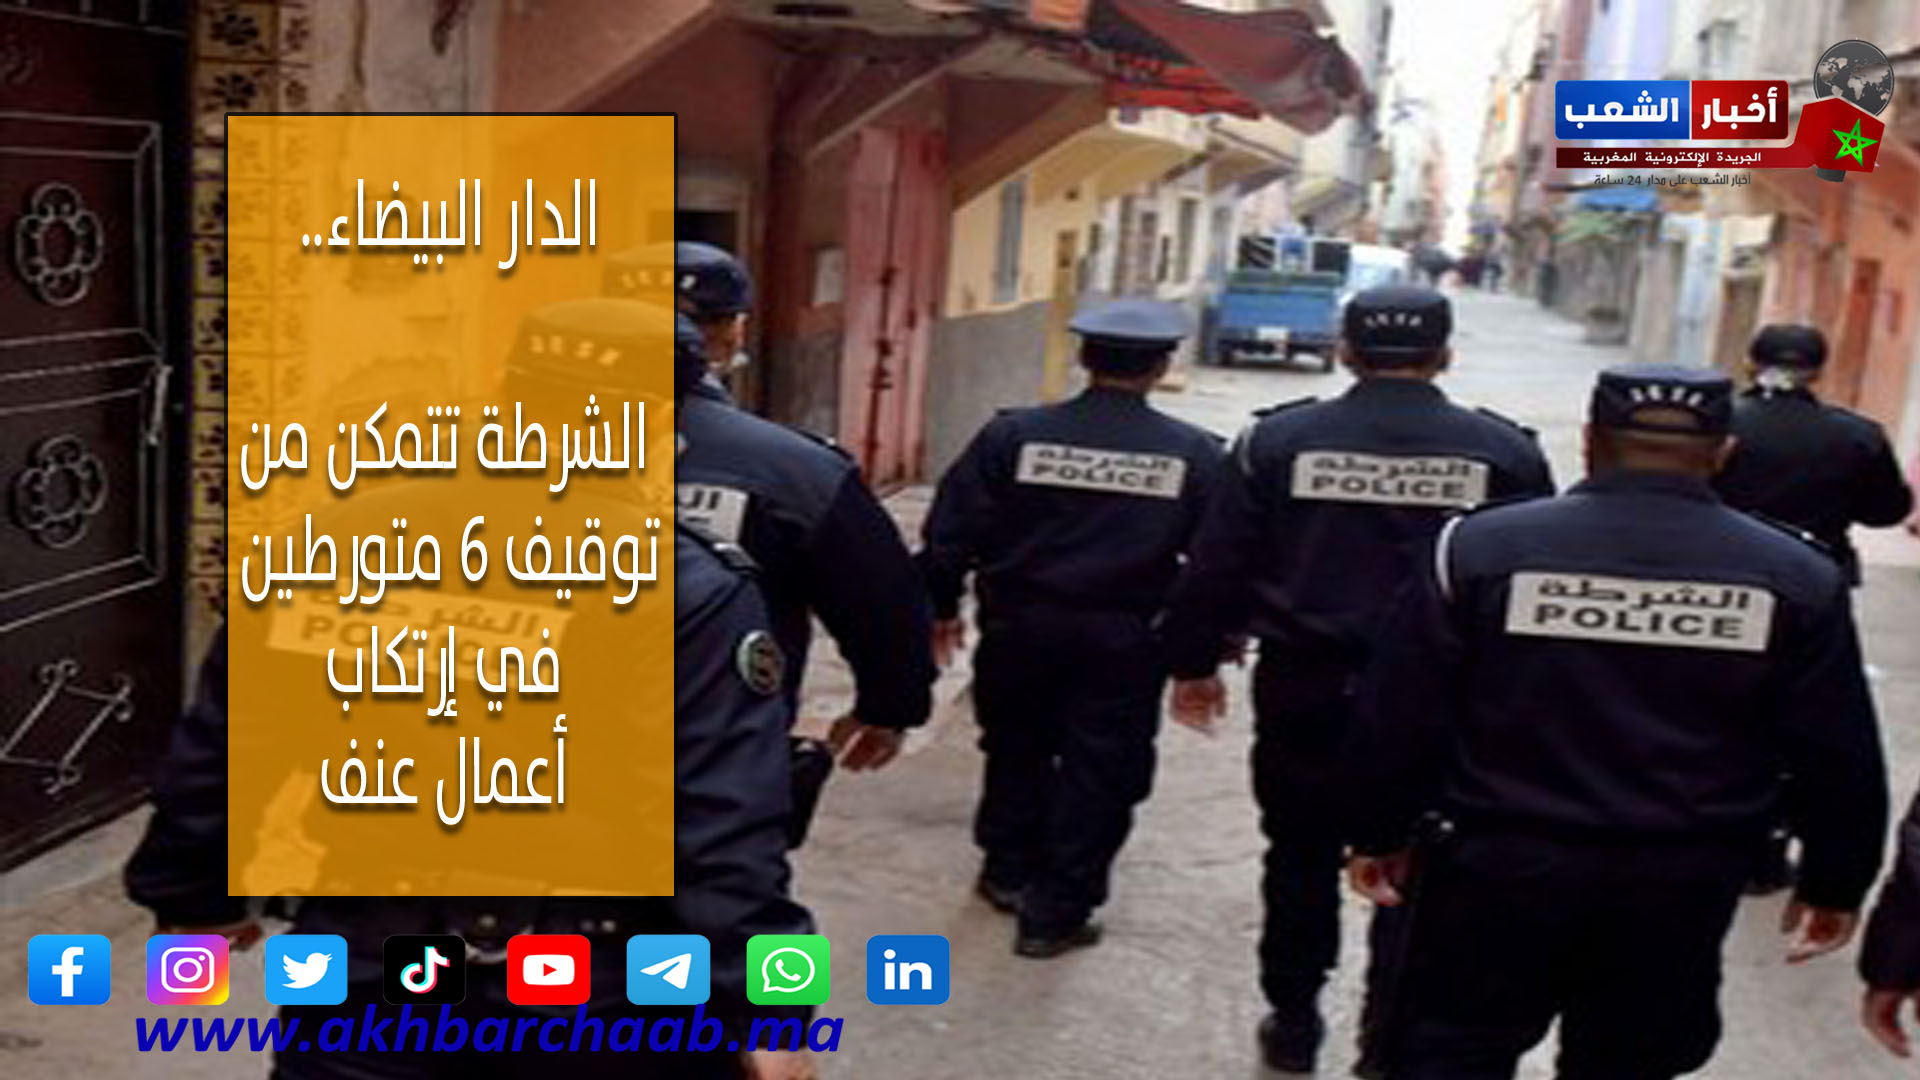 الدار البيضاء .. الشرطة تتمكن من توقيف 6 متورطين في إرتكاب أعمال عنف بالبرنوصي